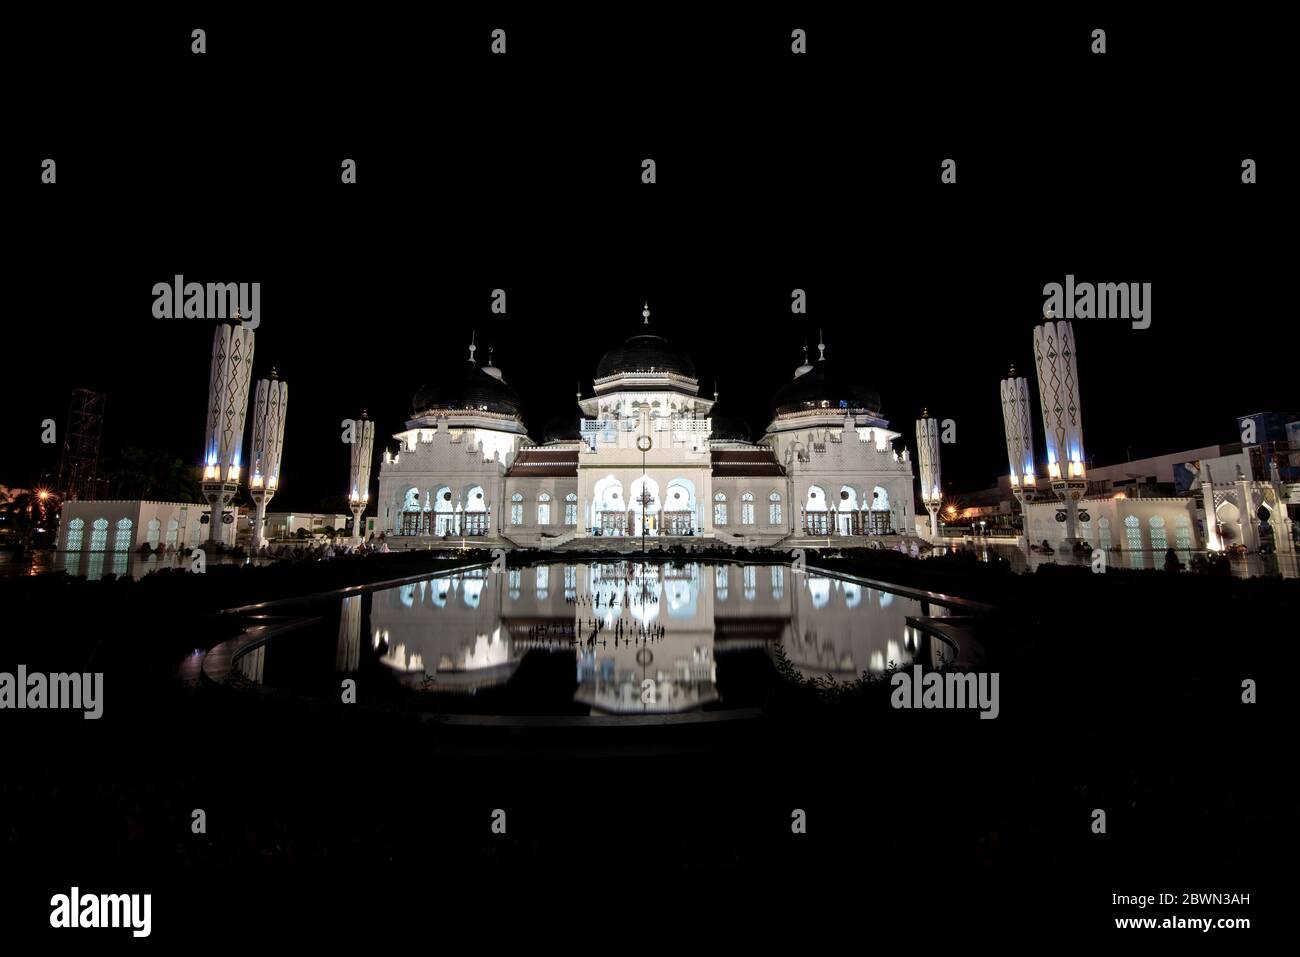 Große Moschee Von Baiturrahman, Aceh, Indonesien Stockfoto